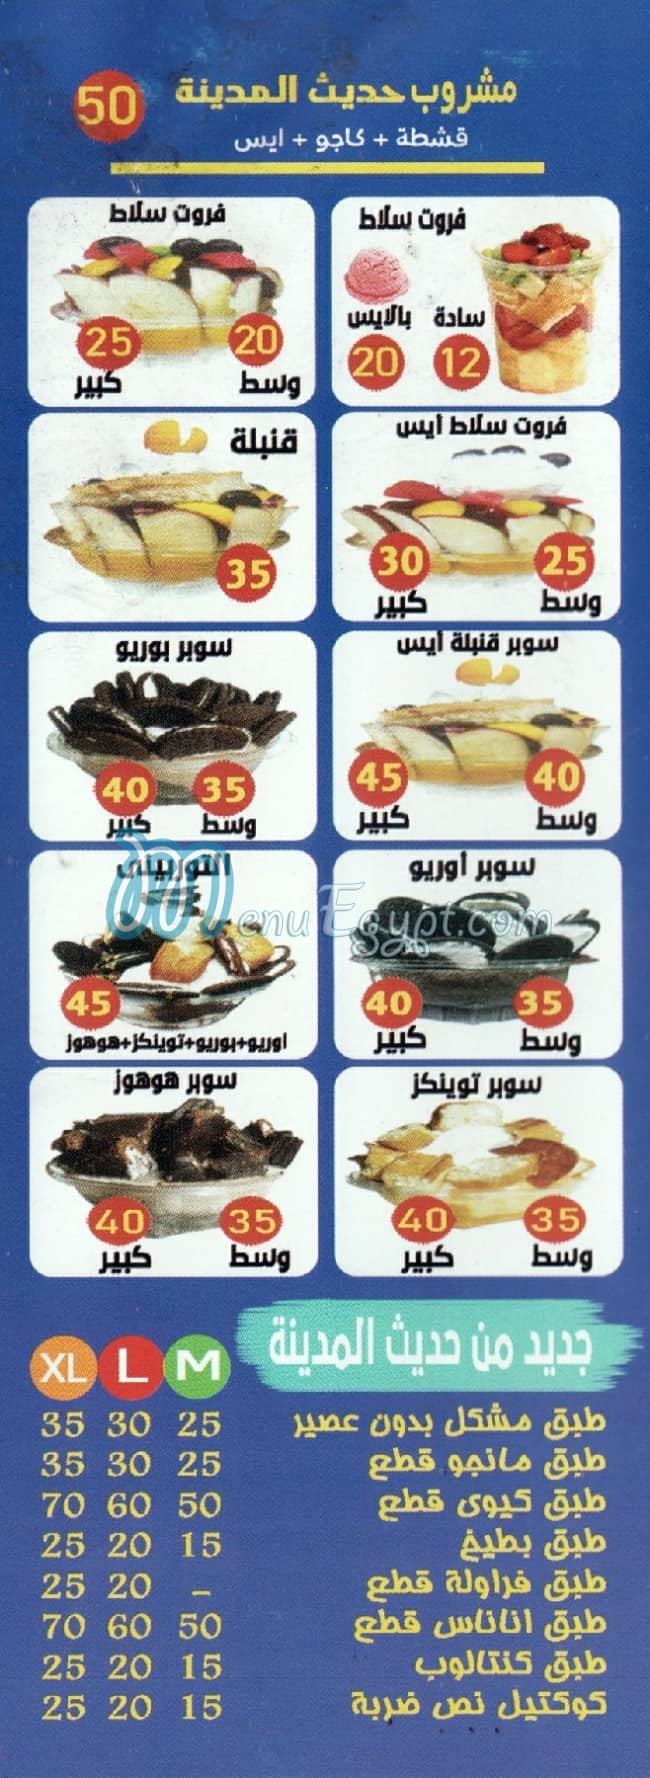 Hadees El Madena menu